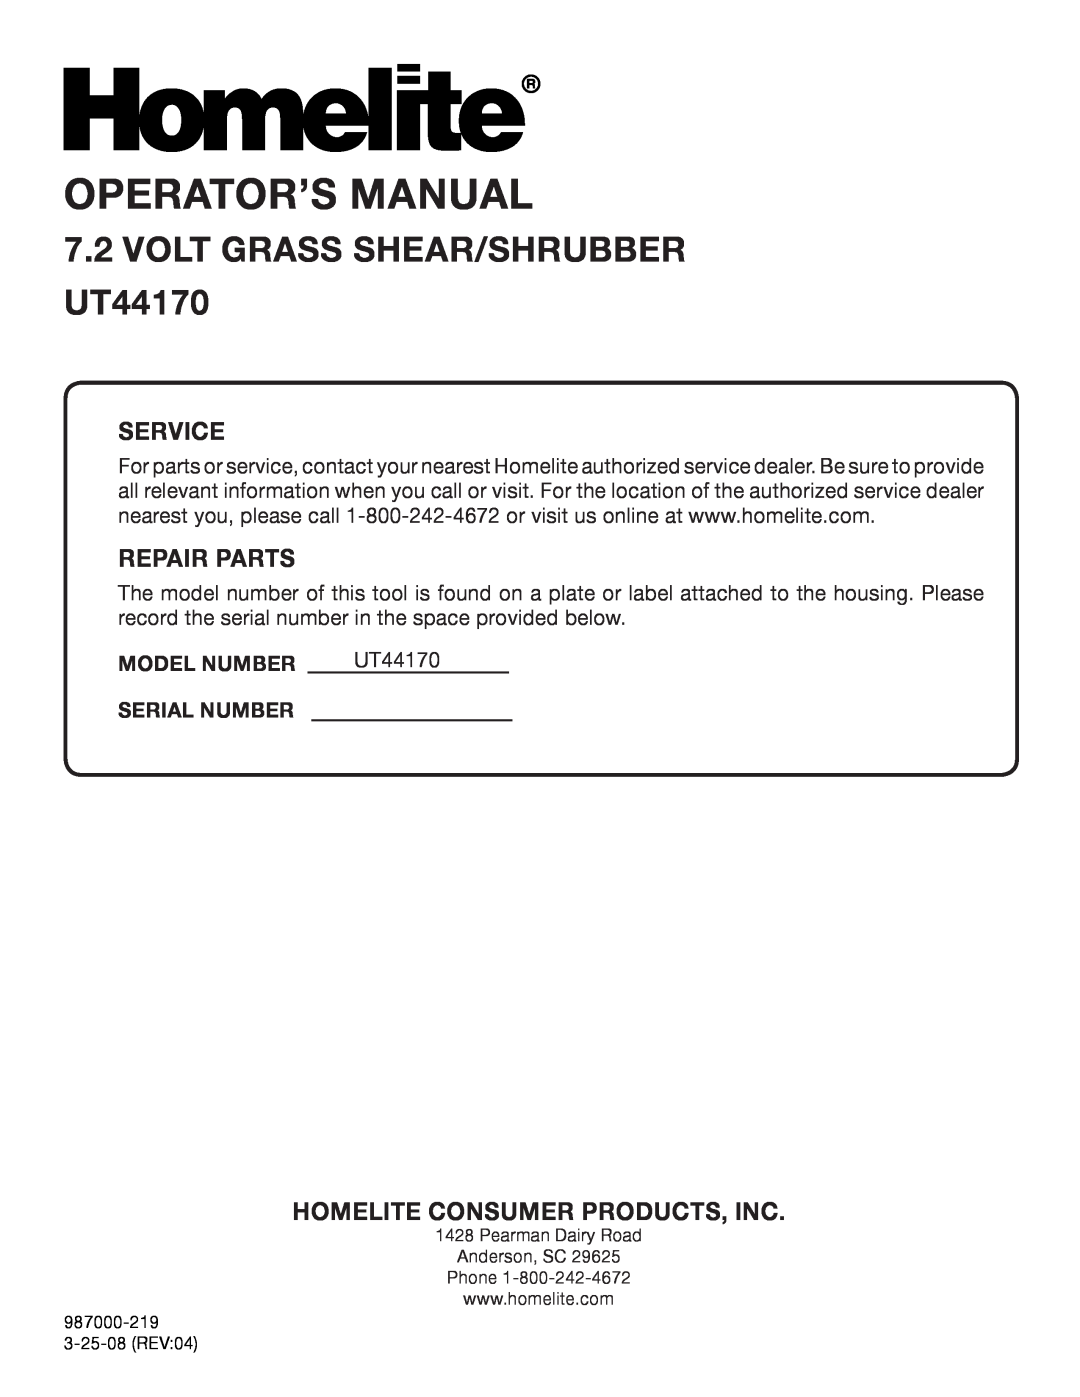 Homelite manual Model Number, Serial Number, Operator’S Manual, VOLT Grass shear/shrubber UT44170, Service, Repair Parts 